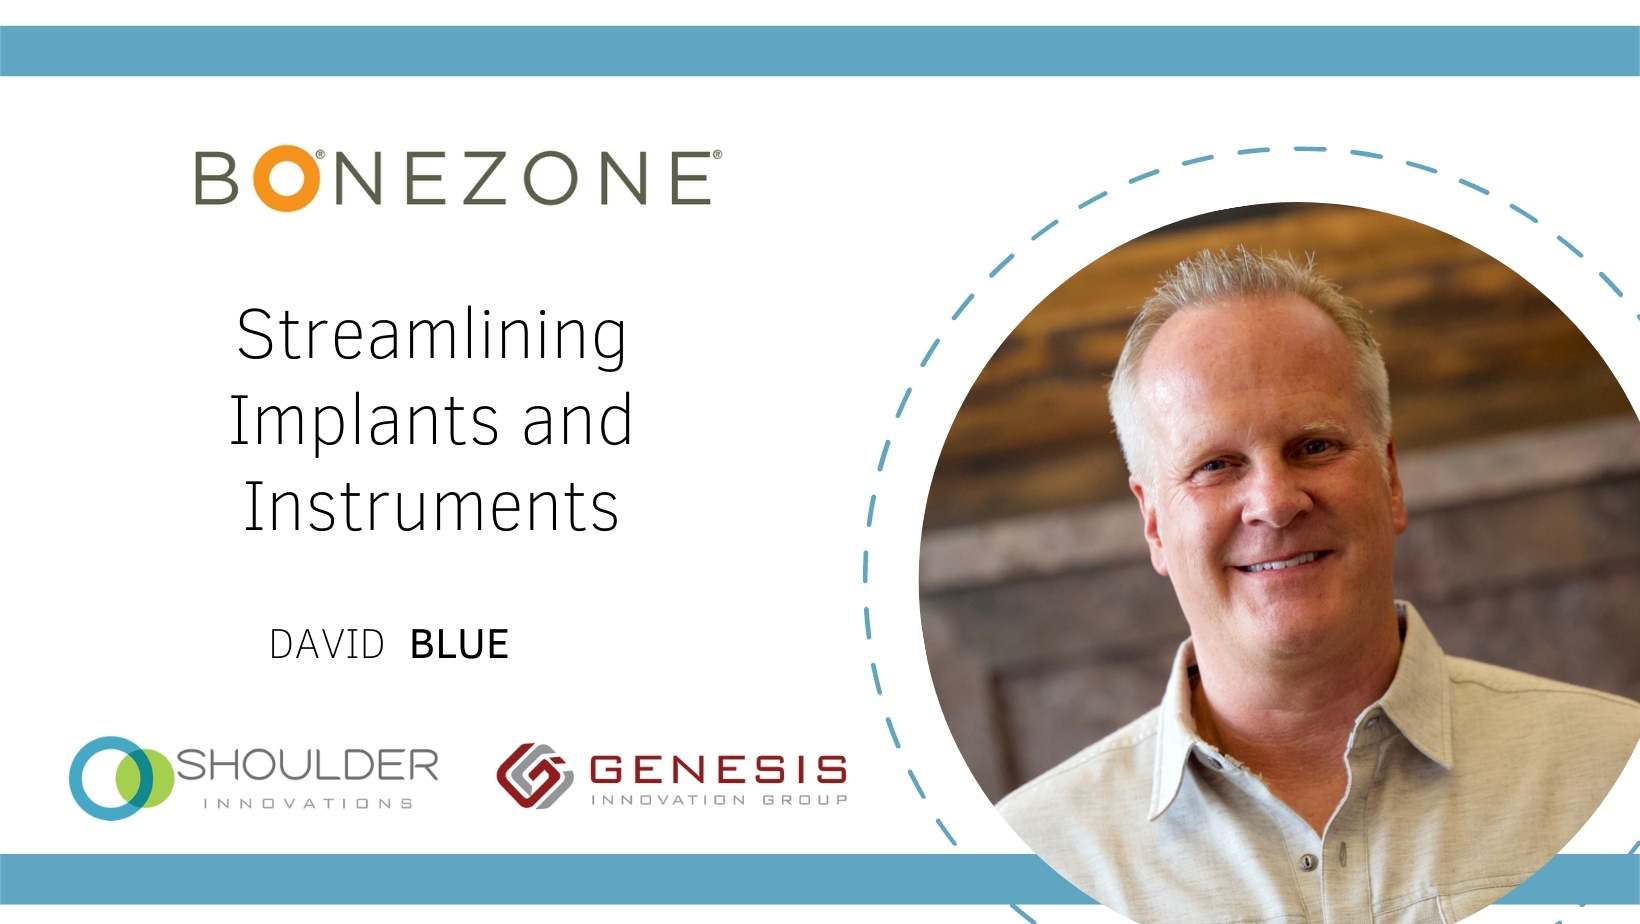 David Blue Shoulder Innovations Bonezone interview